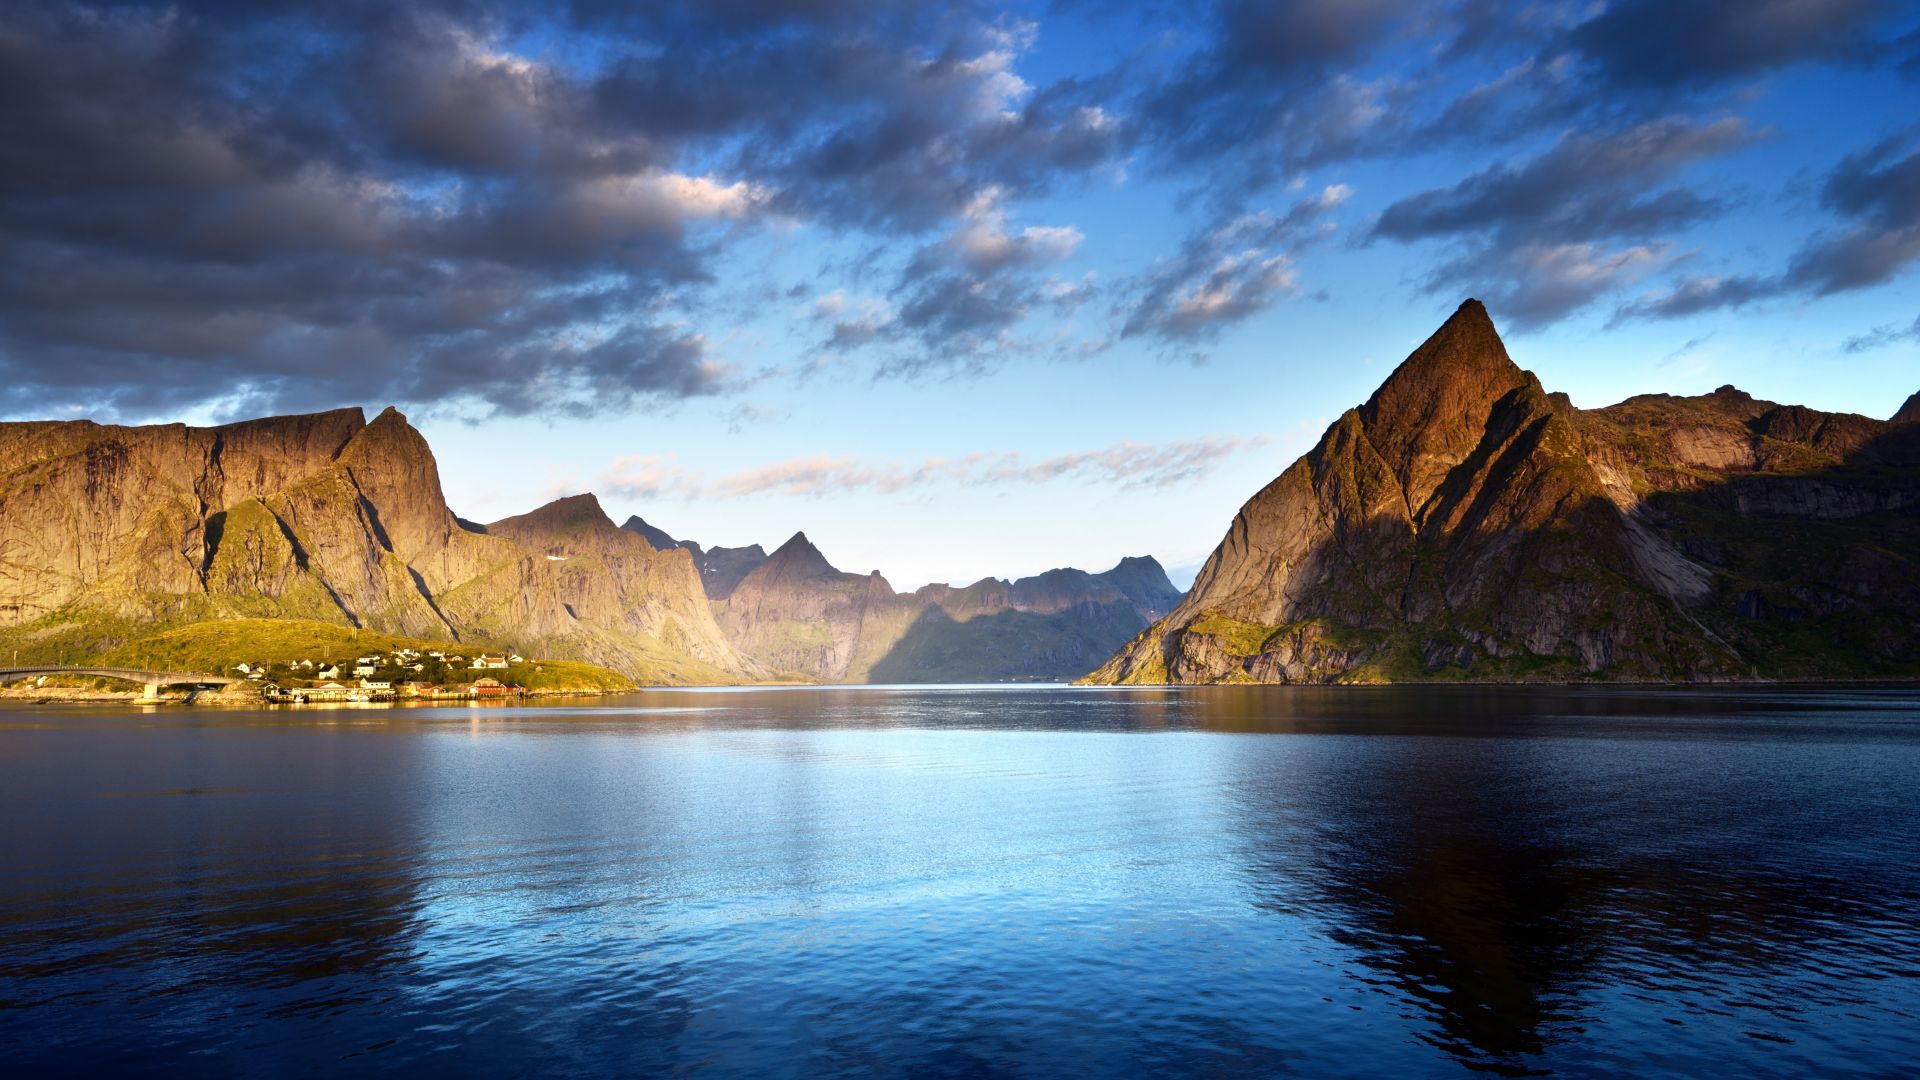 Norway, Lofoten islands, Europe, Mountains, sea, clouds, 5k (horizontal)